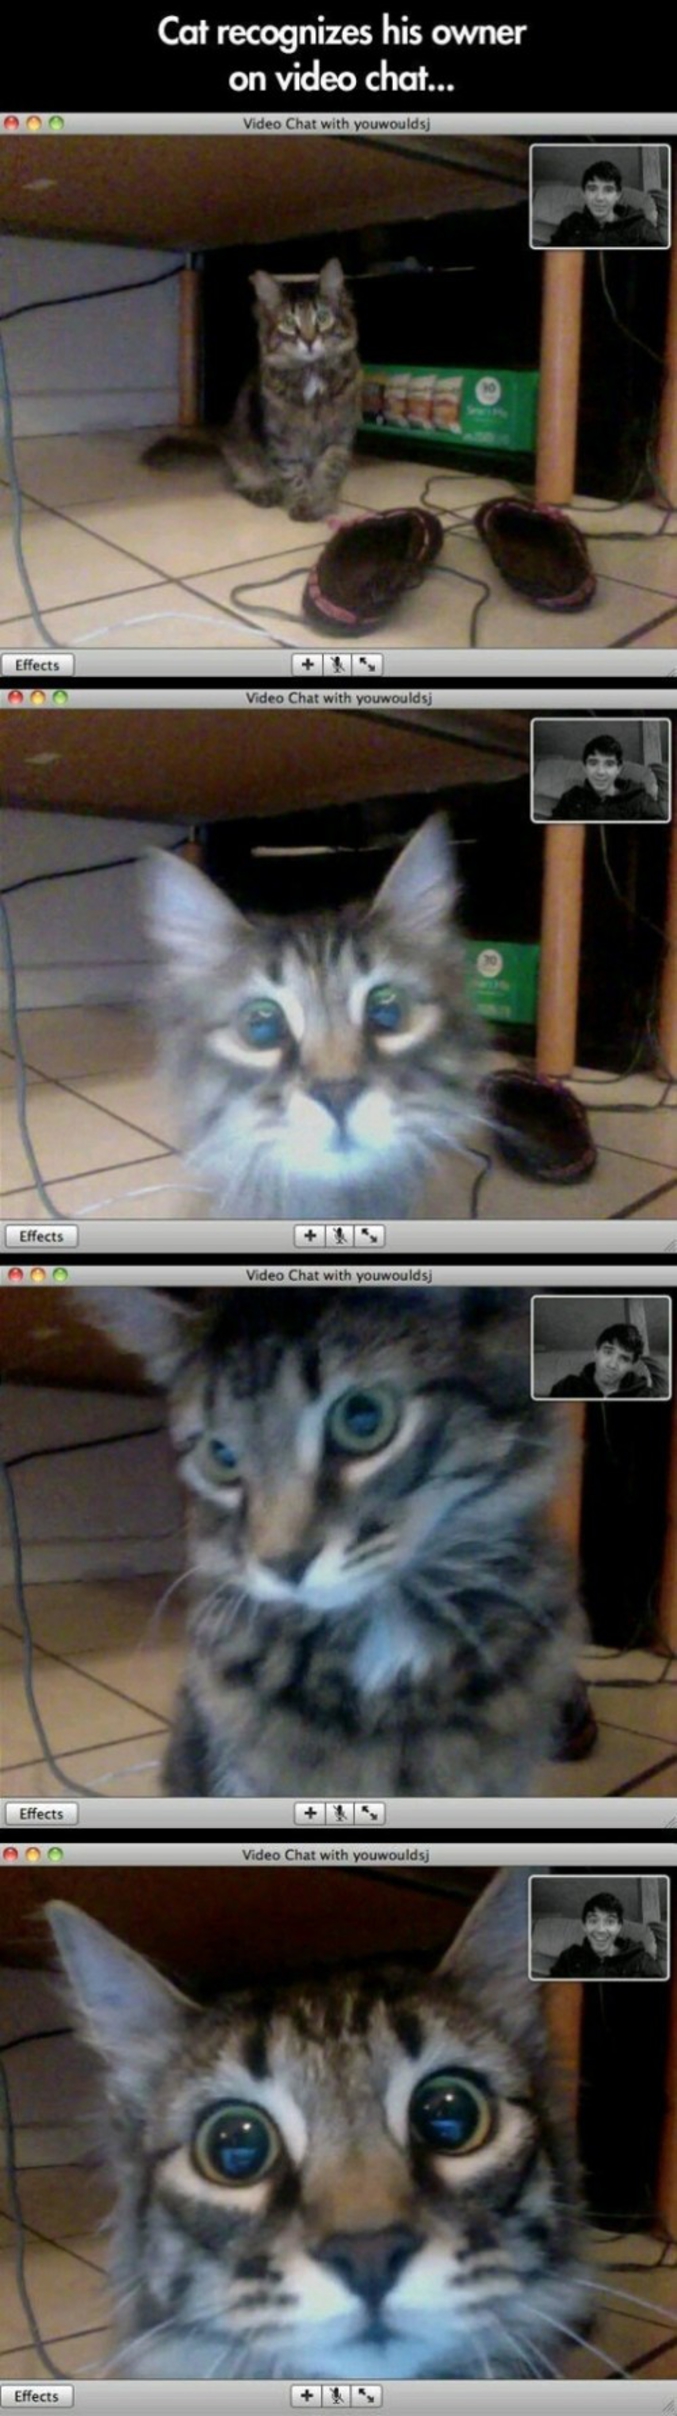 Un chat reconnaît son maître sur un chat vidéo.